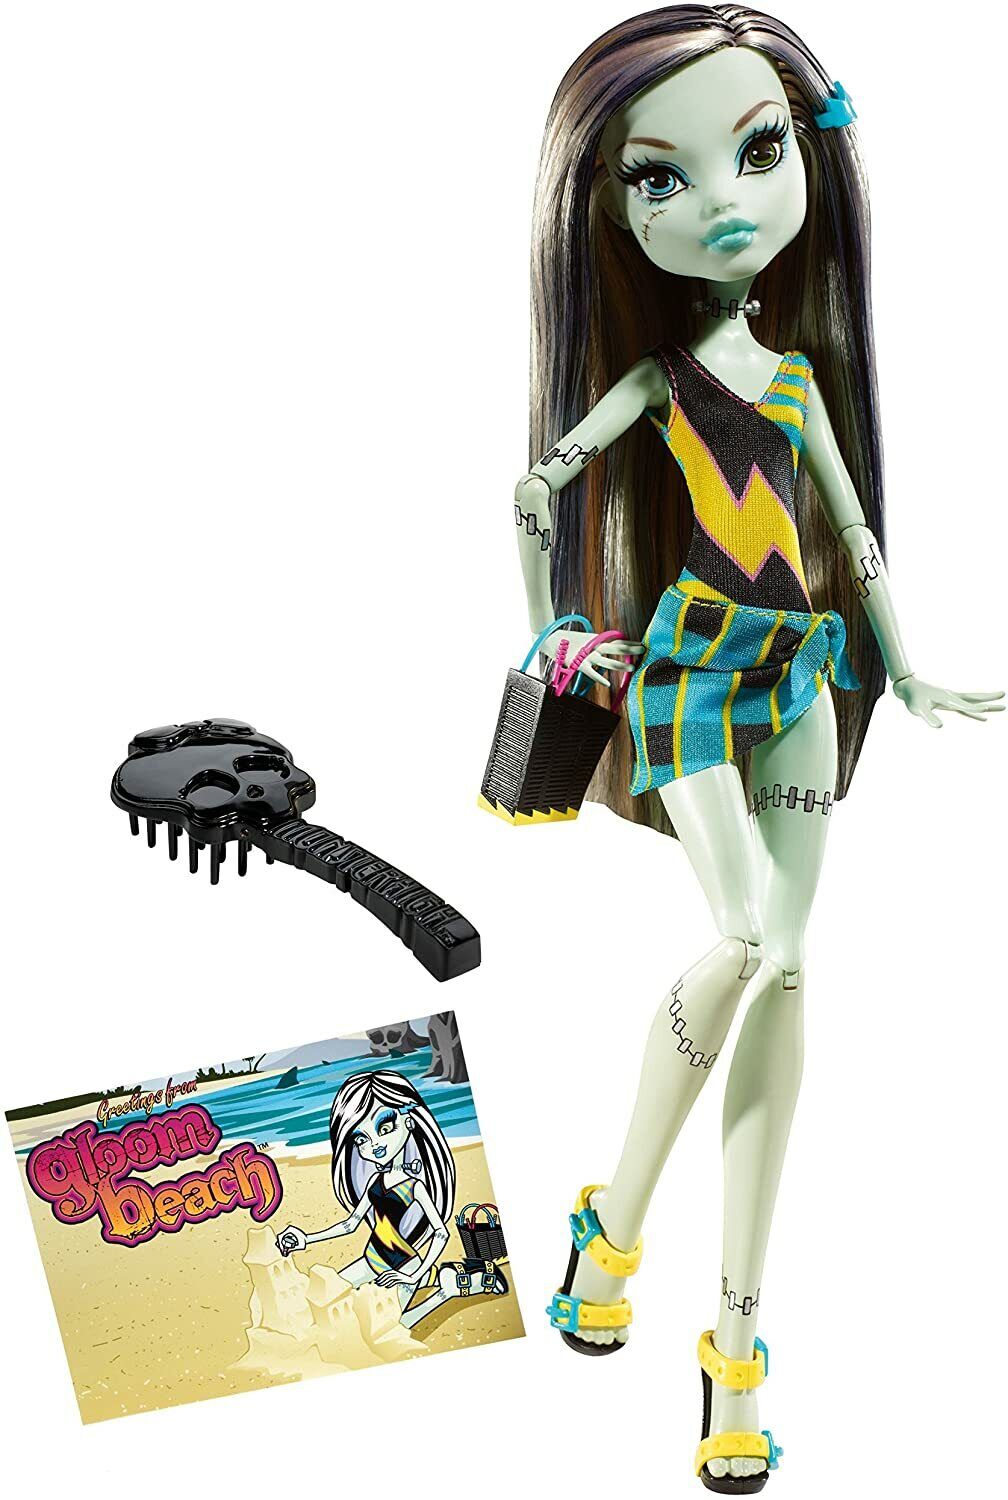 Monster High Gloom Beach Frankie Stein, Daughter of Frankenstein Mattel